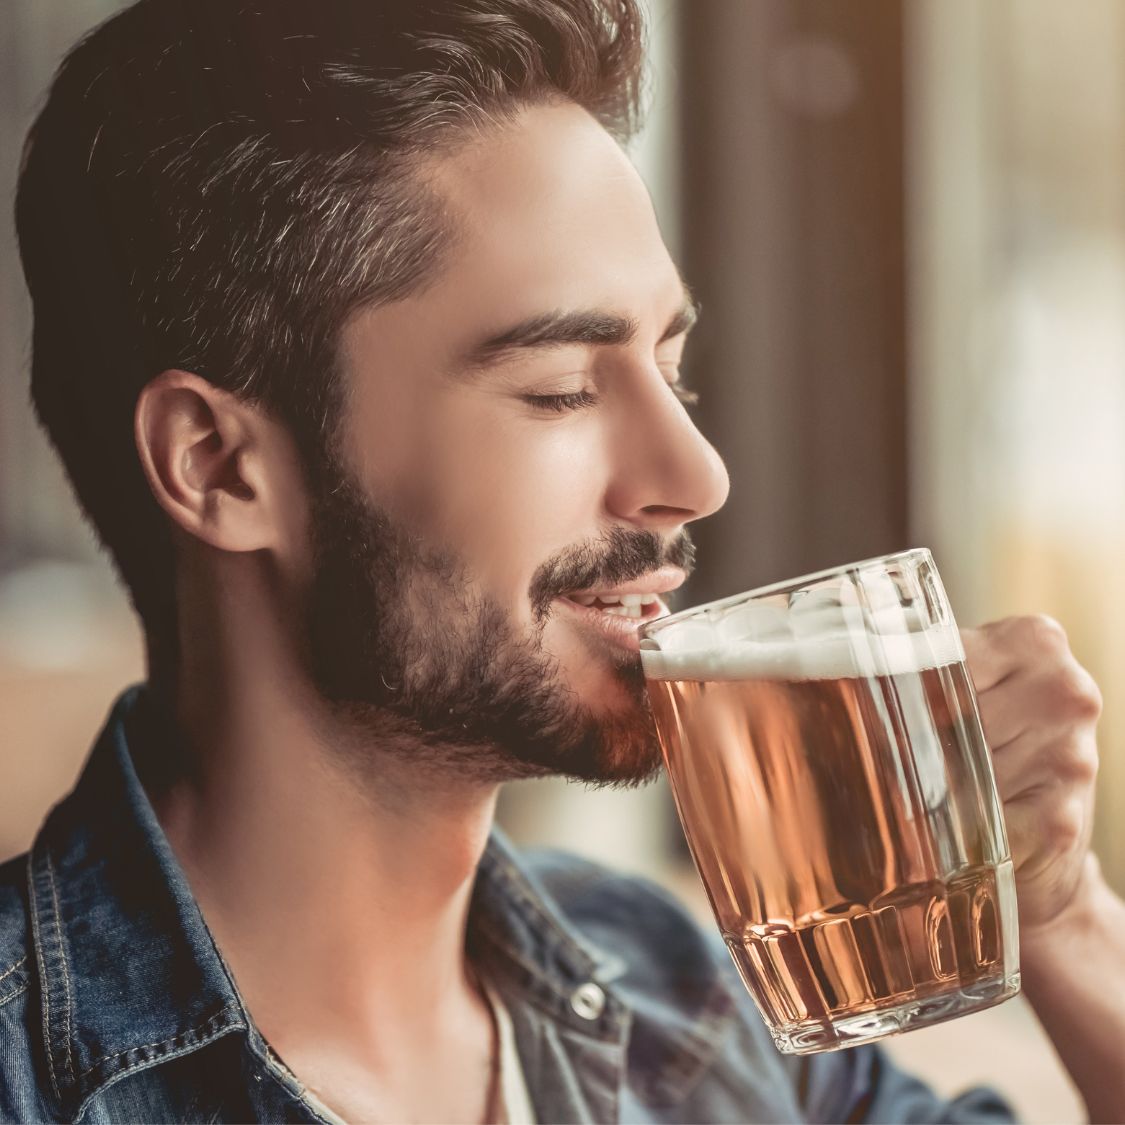 Helpful Tips on Enjoying the Taste of Beer